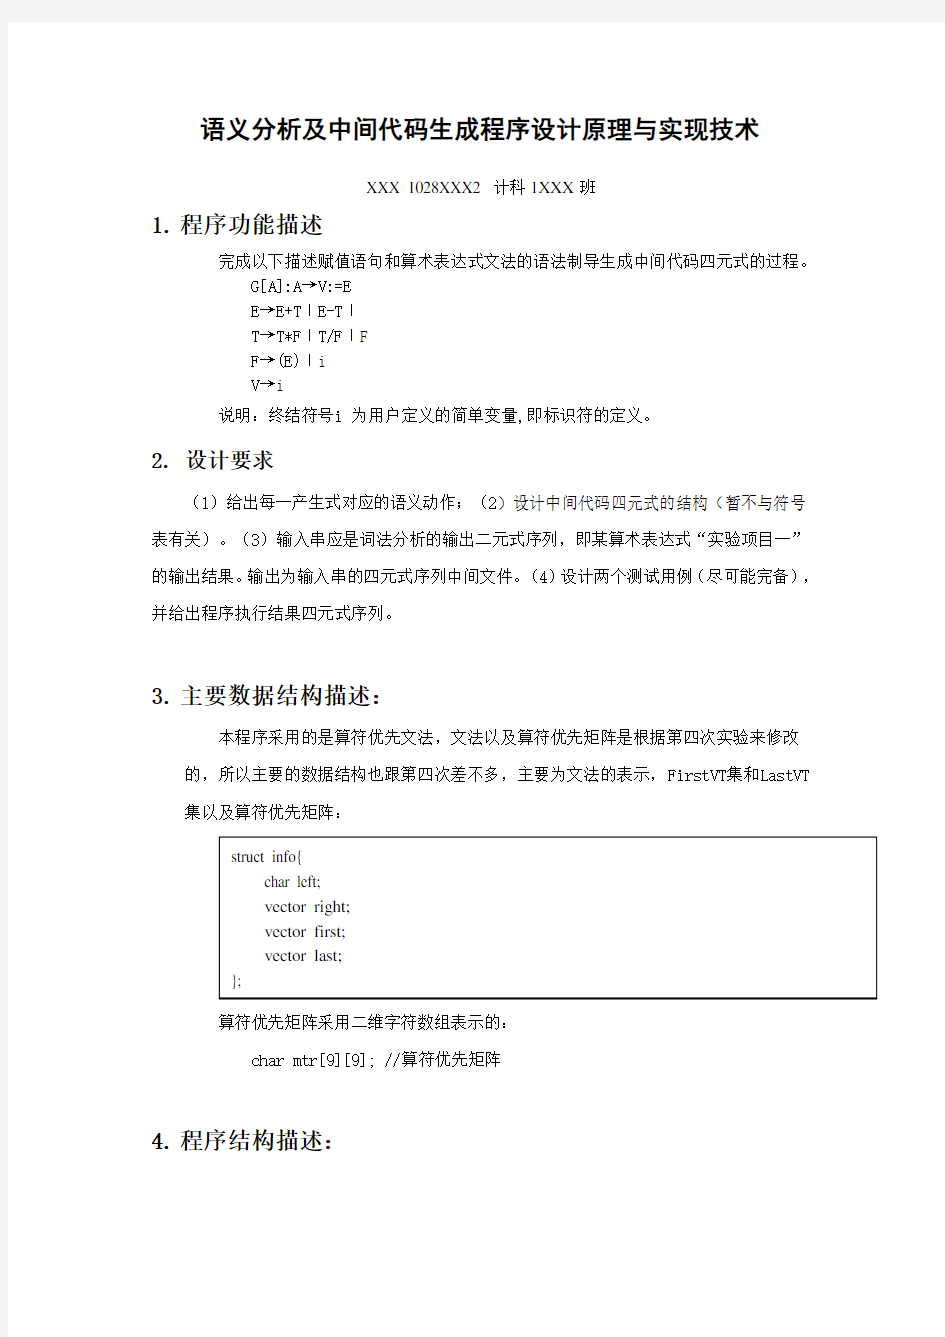 语义分析及中间代码生成程序设计原理与实现技术--实验报告及源代码 北京交通大学